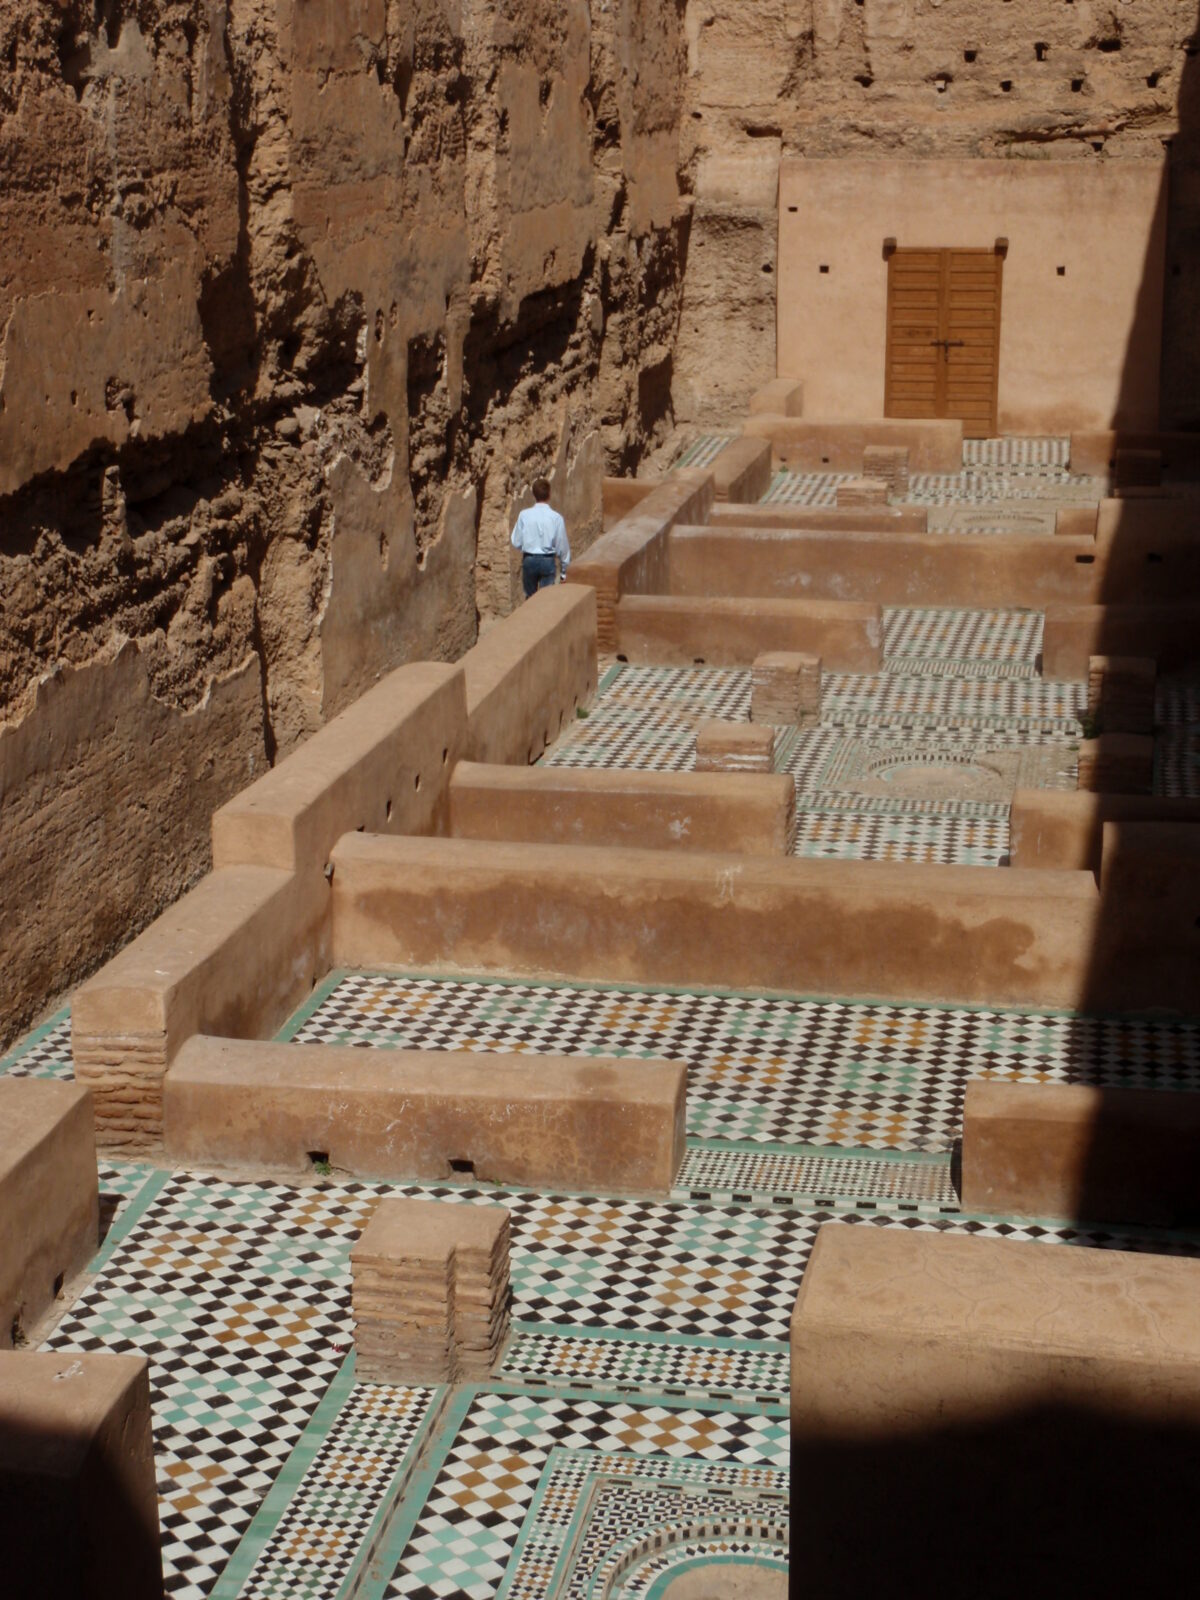 Dag 2 - Pelgrimsreis in Marokko en Marrakech